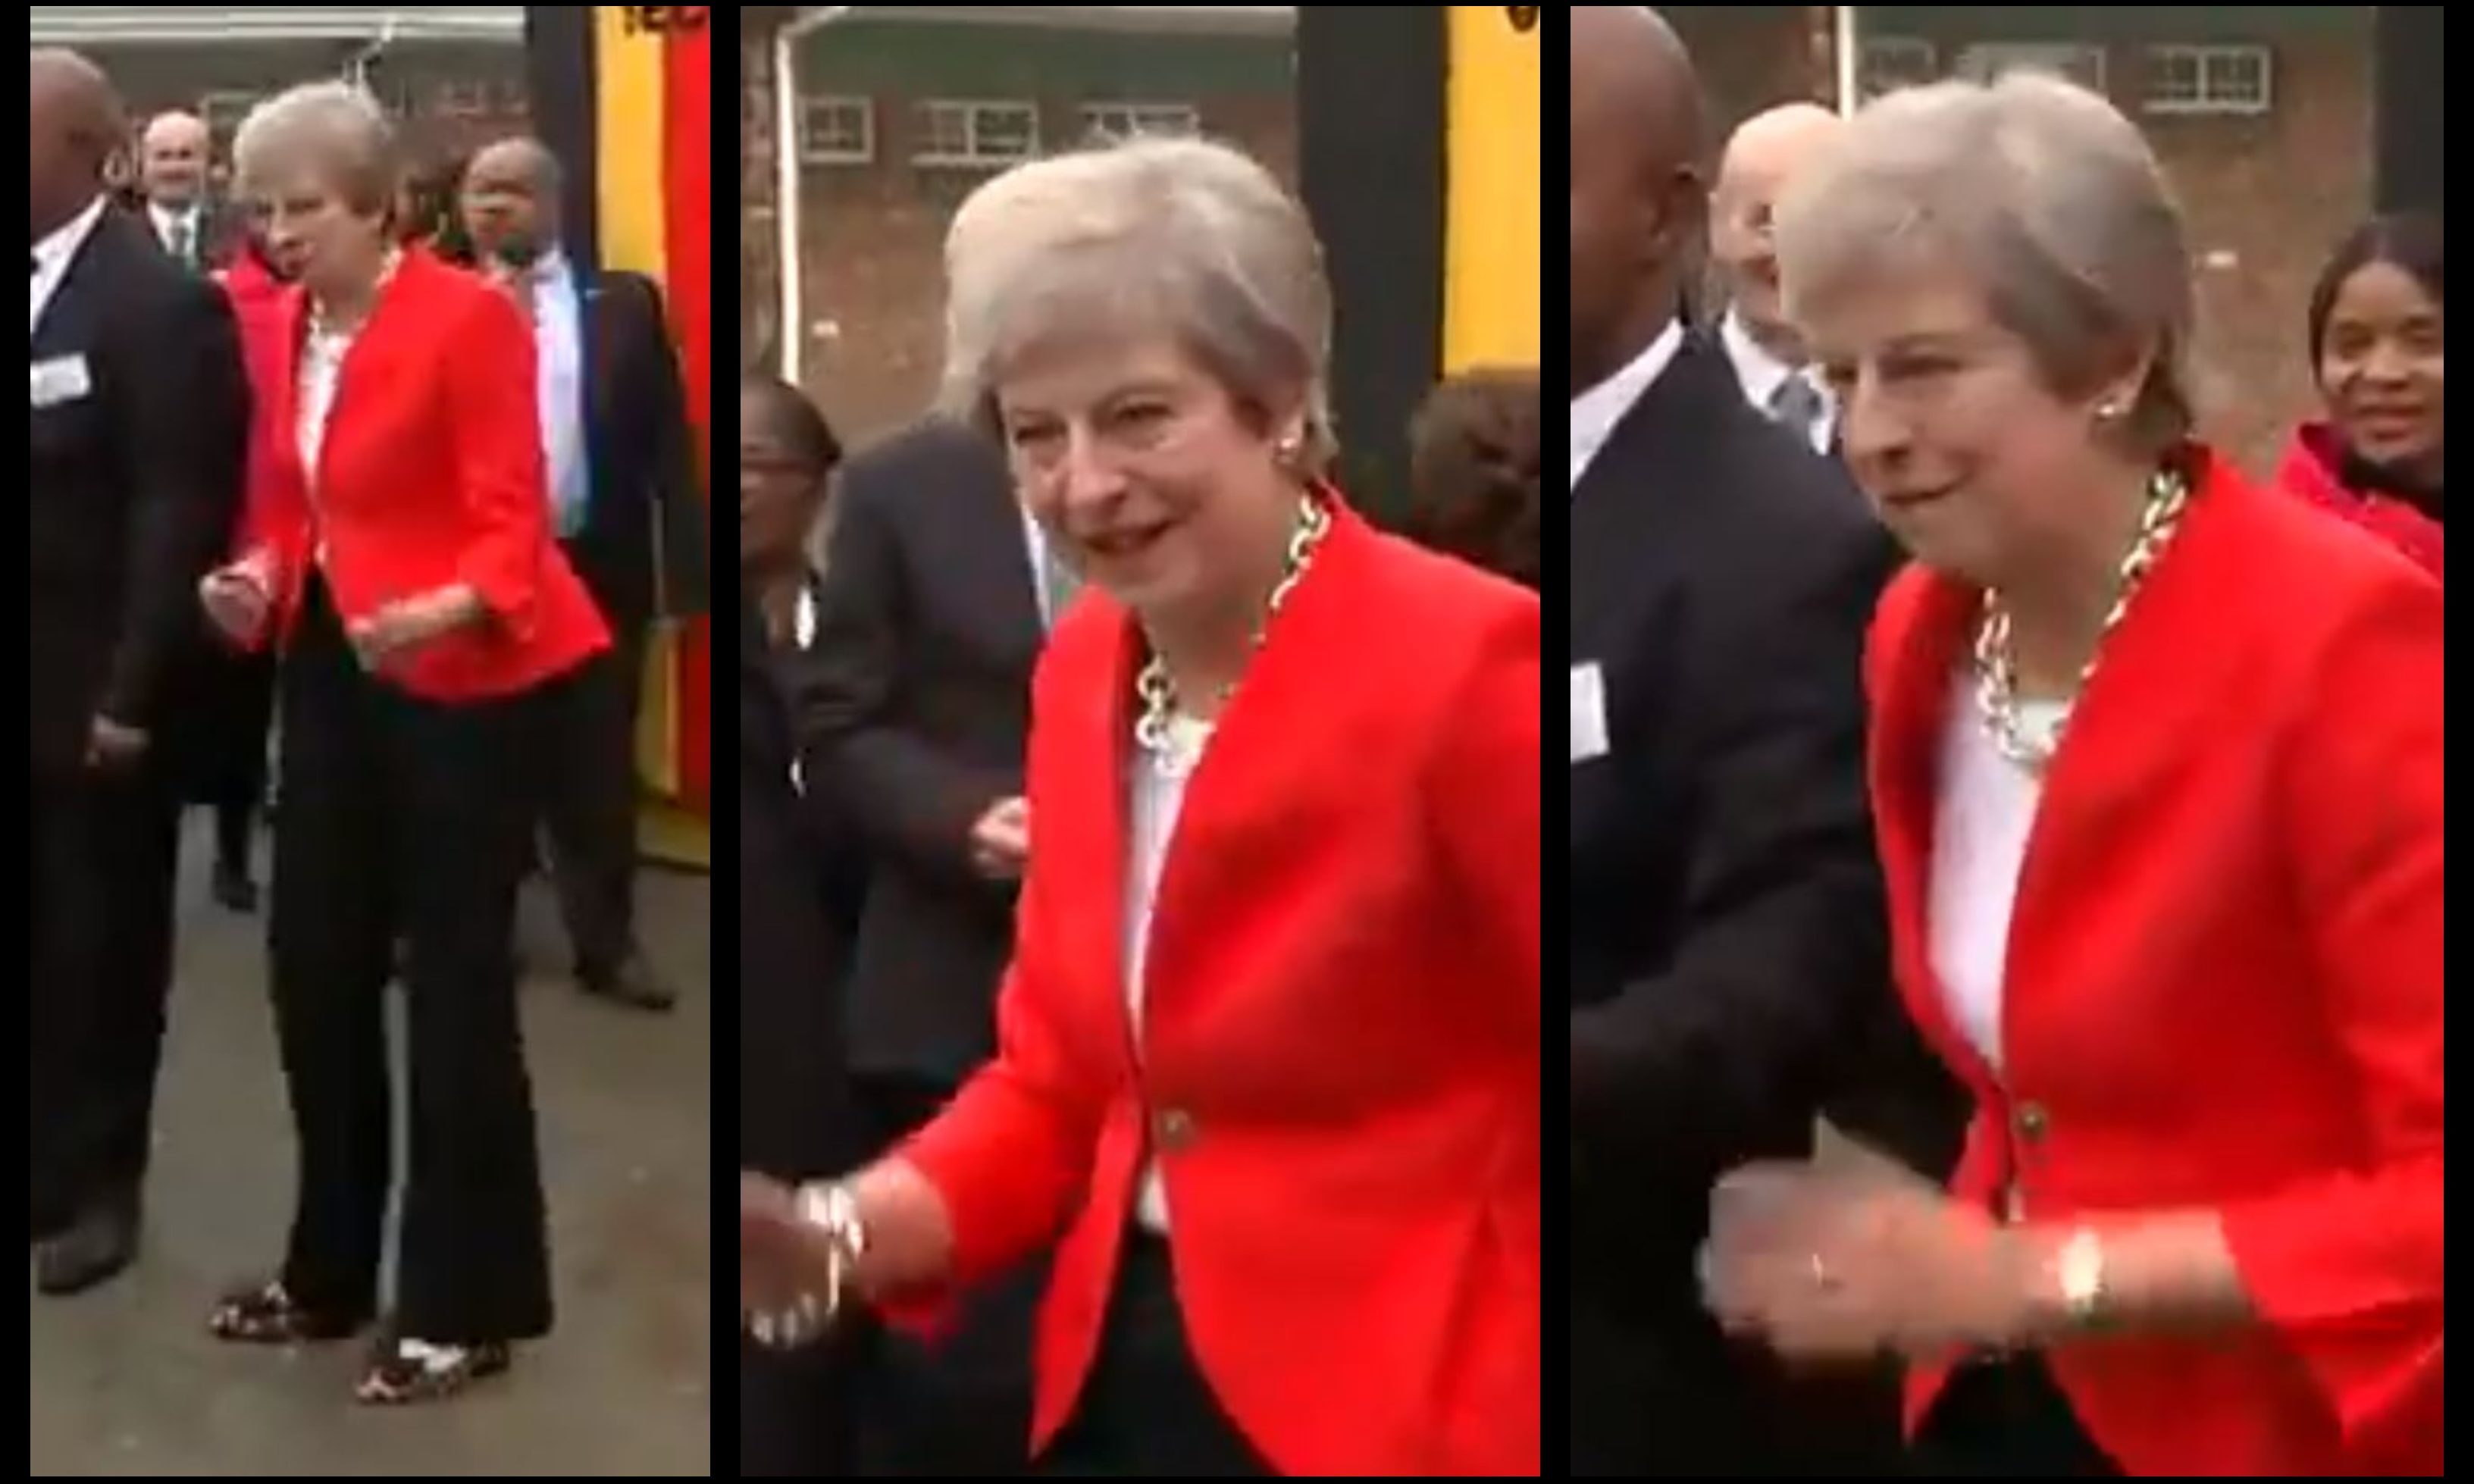 Theresa May's dance moves.